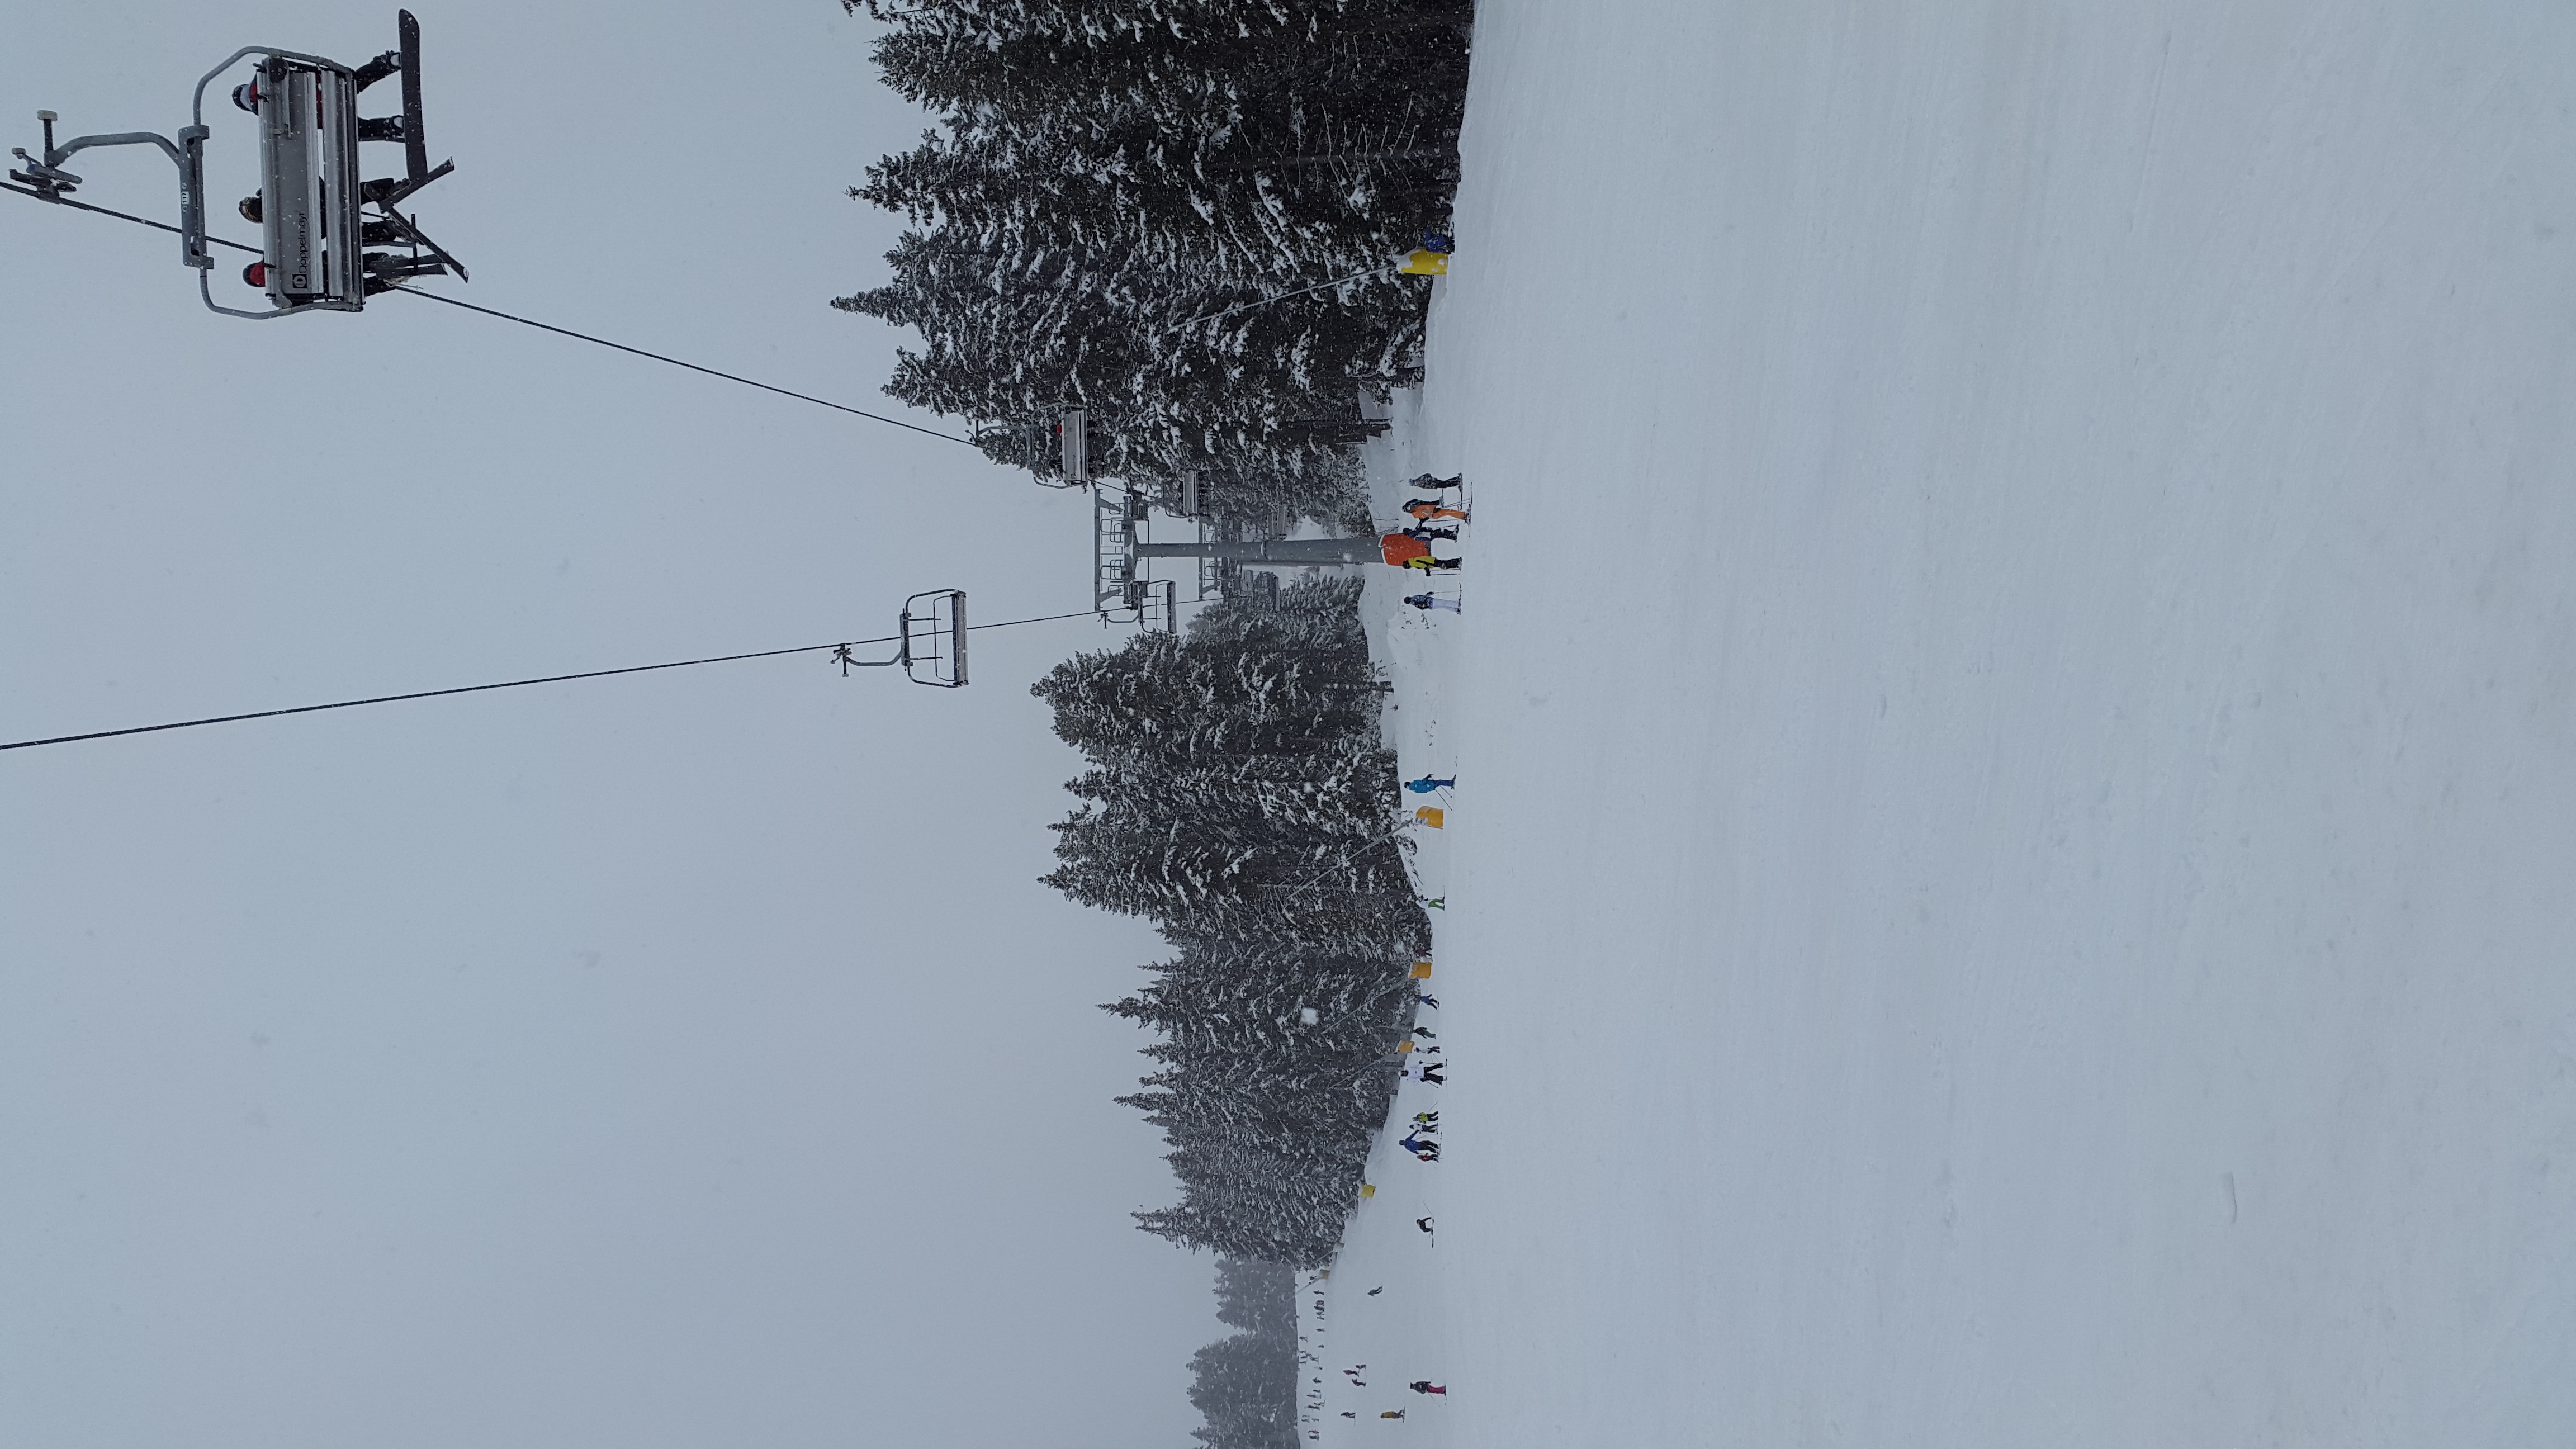 Bansko Ski Resort